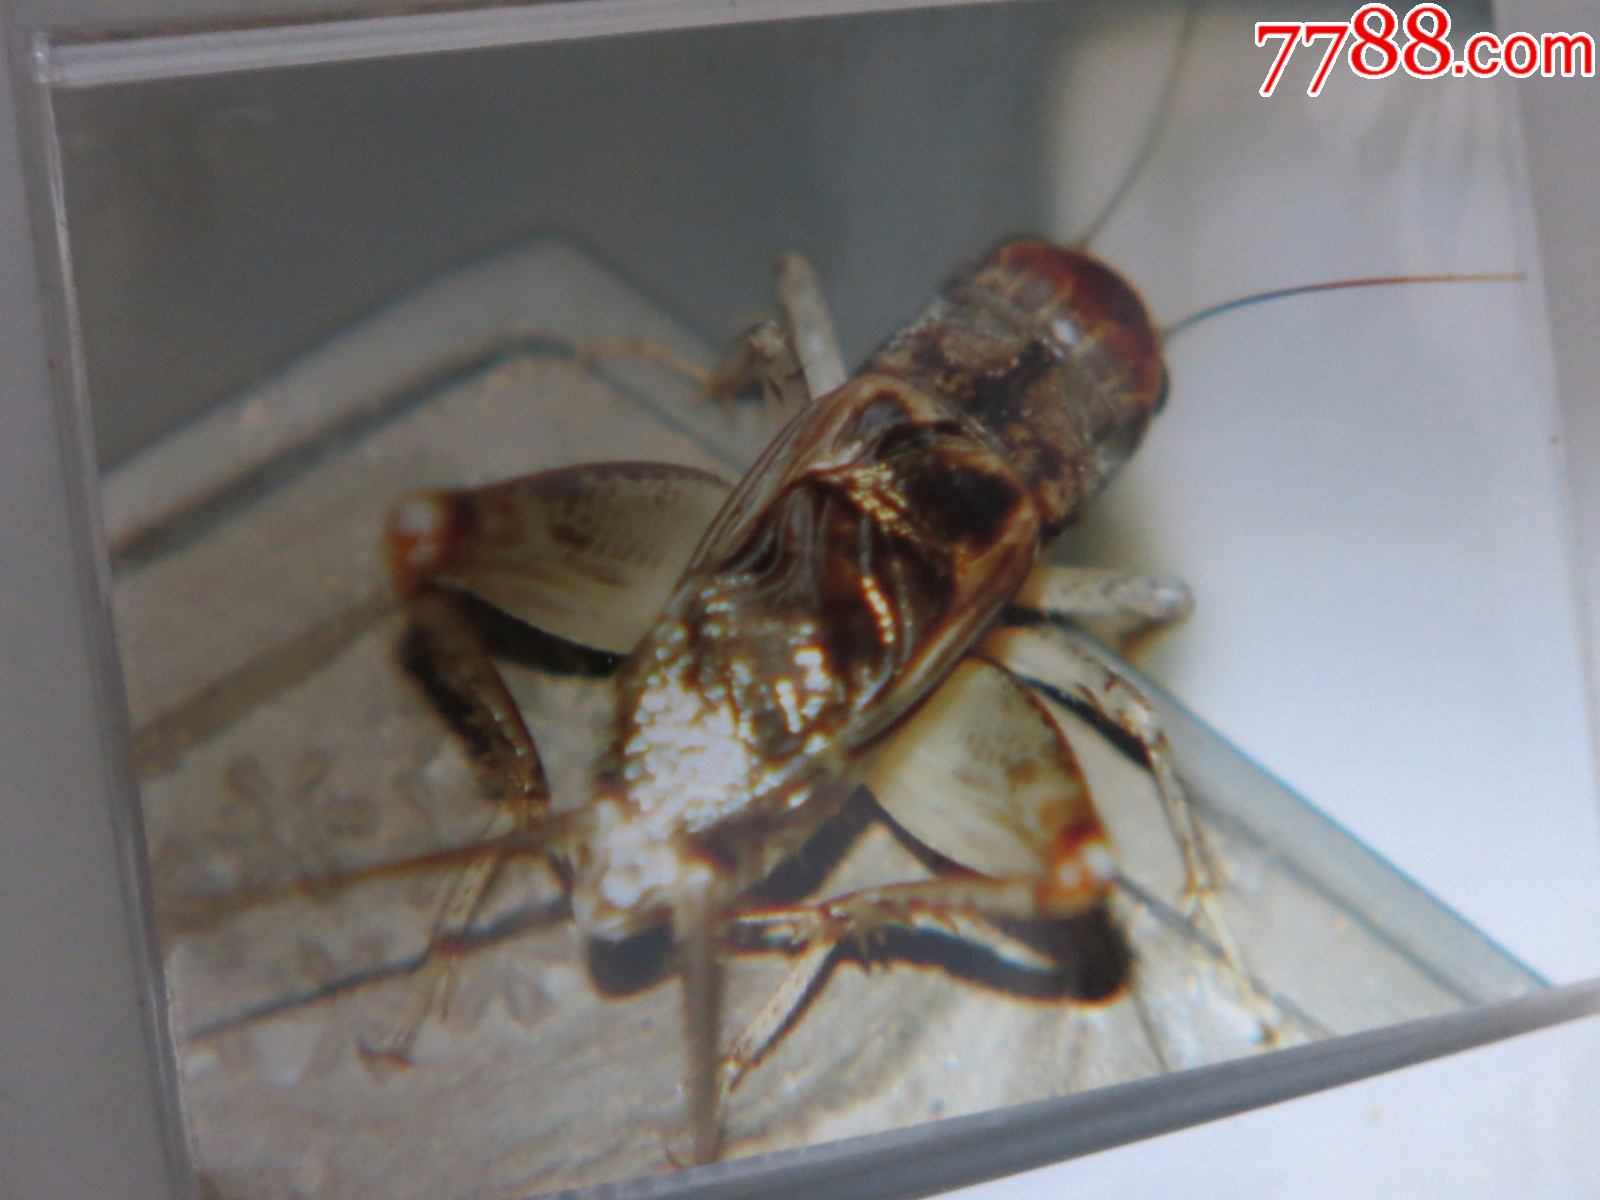 蟋蟀蛐蛐异虫照片一本,吴继传拍摄照原件,封皮作者所写《蚁码异虫》